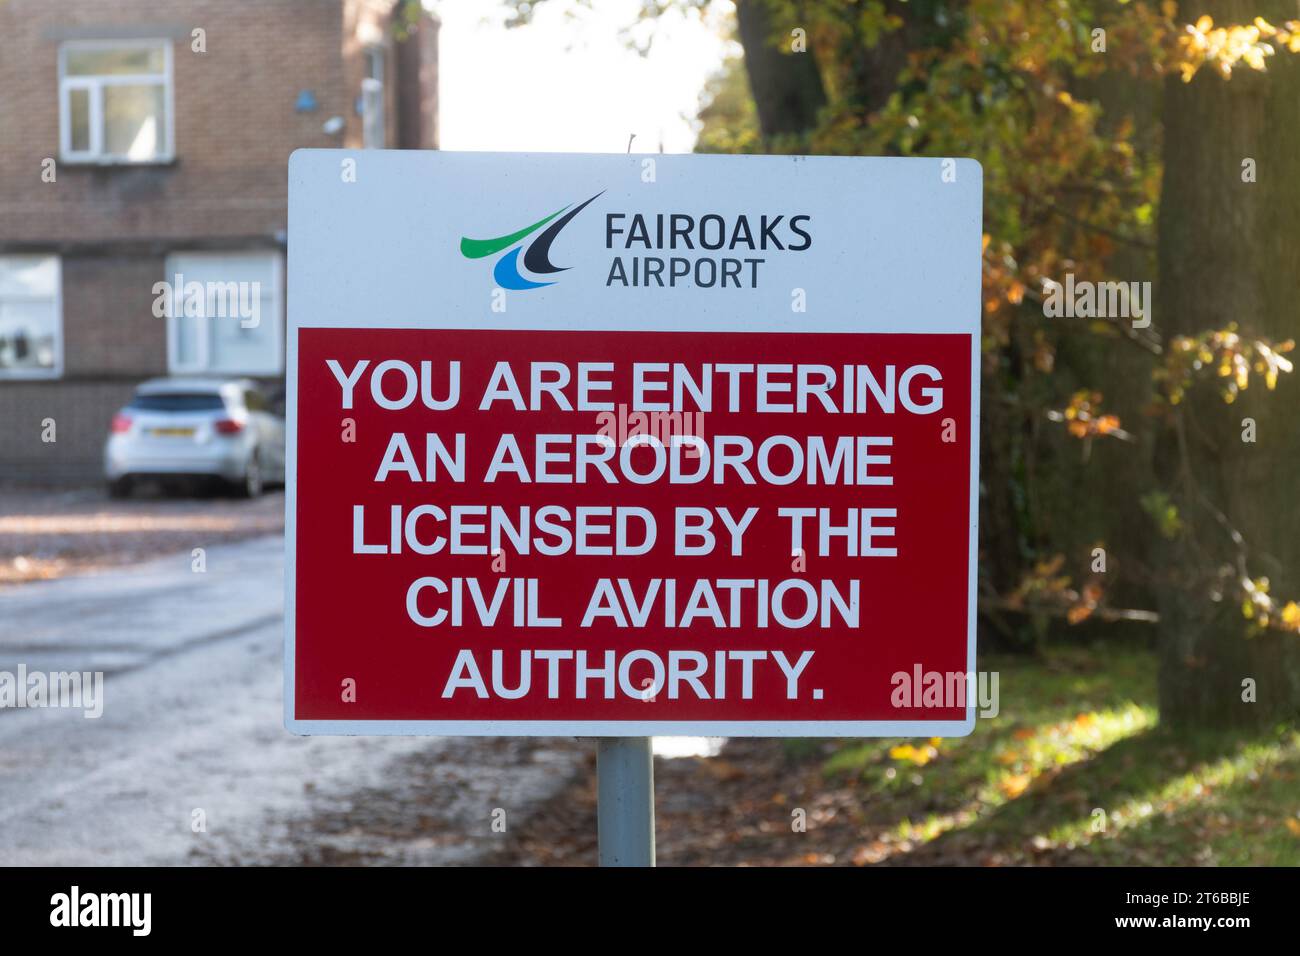 Fairoaks Airport dans le Surrey, Angleterre, Royaume-Uni. Signe vous entrez dans un aérodrome autorisé par l’Autorité de l’aviation civile Banque D'Images